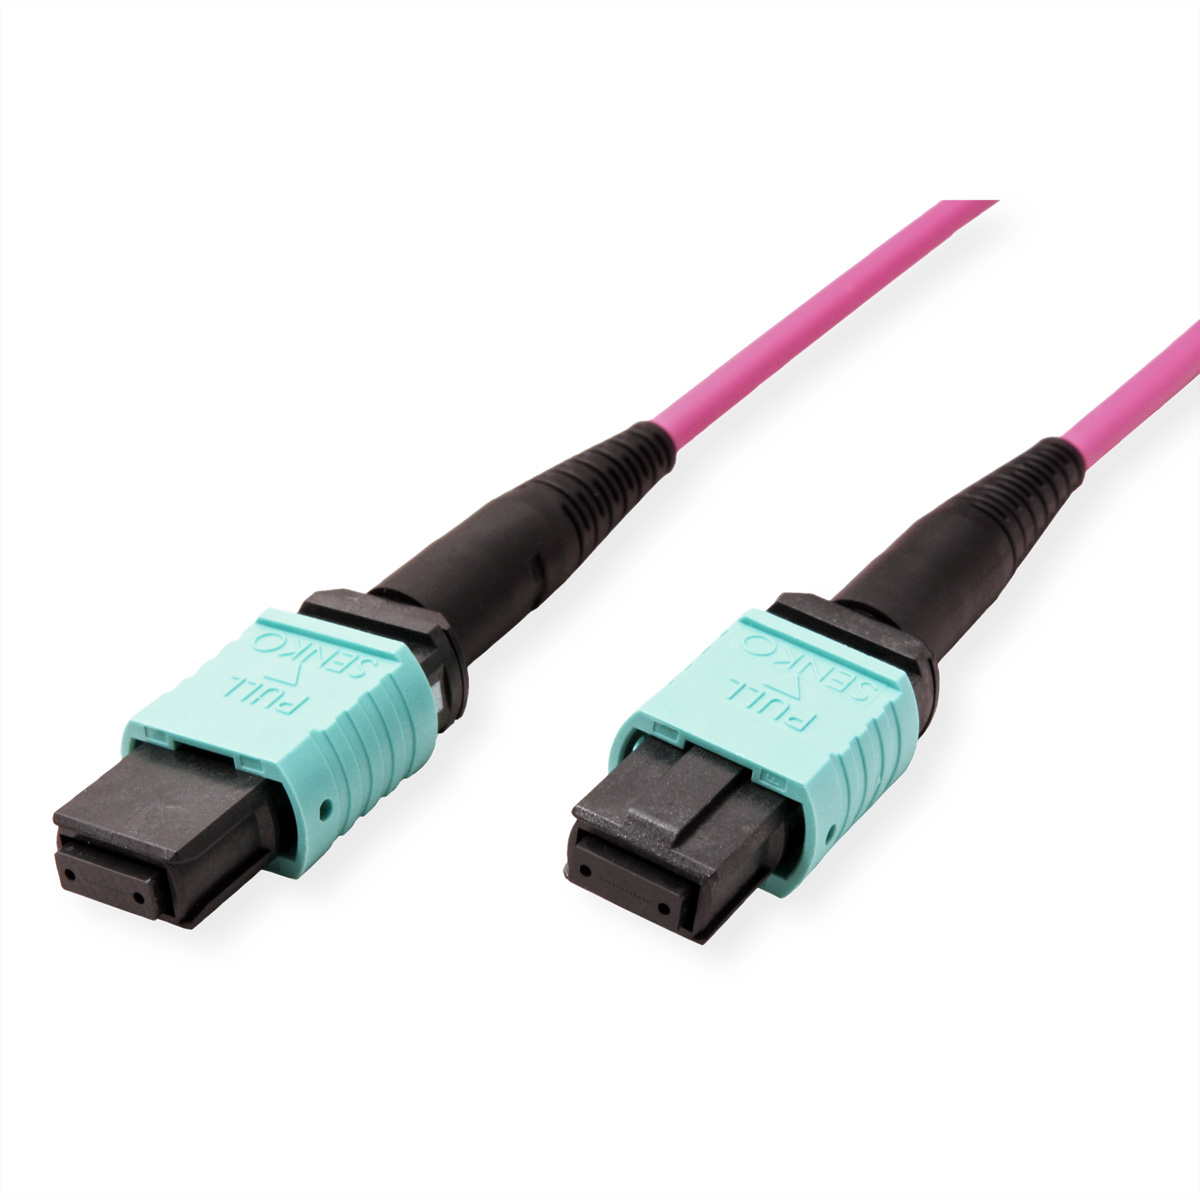 VALUE MPO-Trunk-Kabel 50/125µm m push-on), (multi-fibre OM4, 15 MPO/MPO, MPO